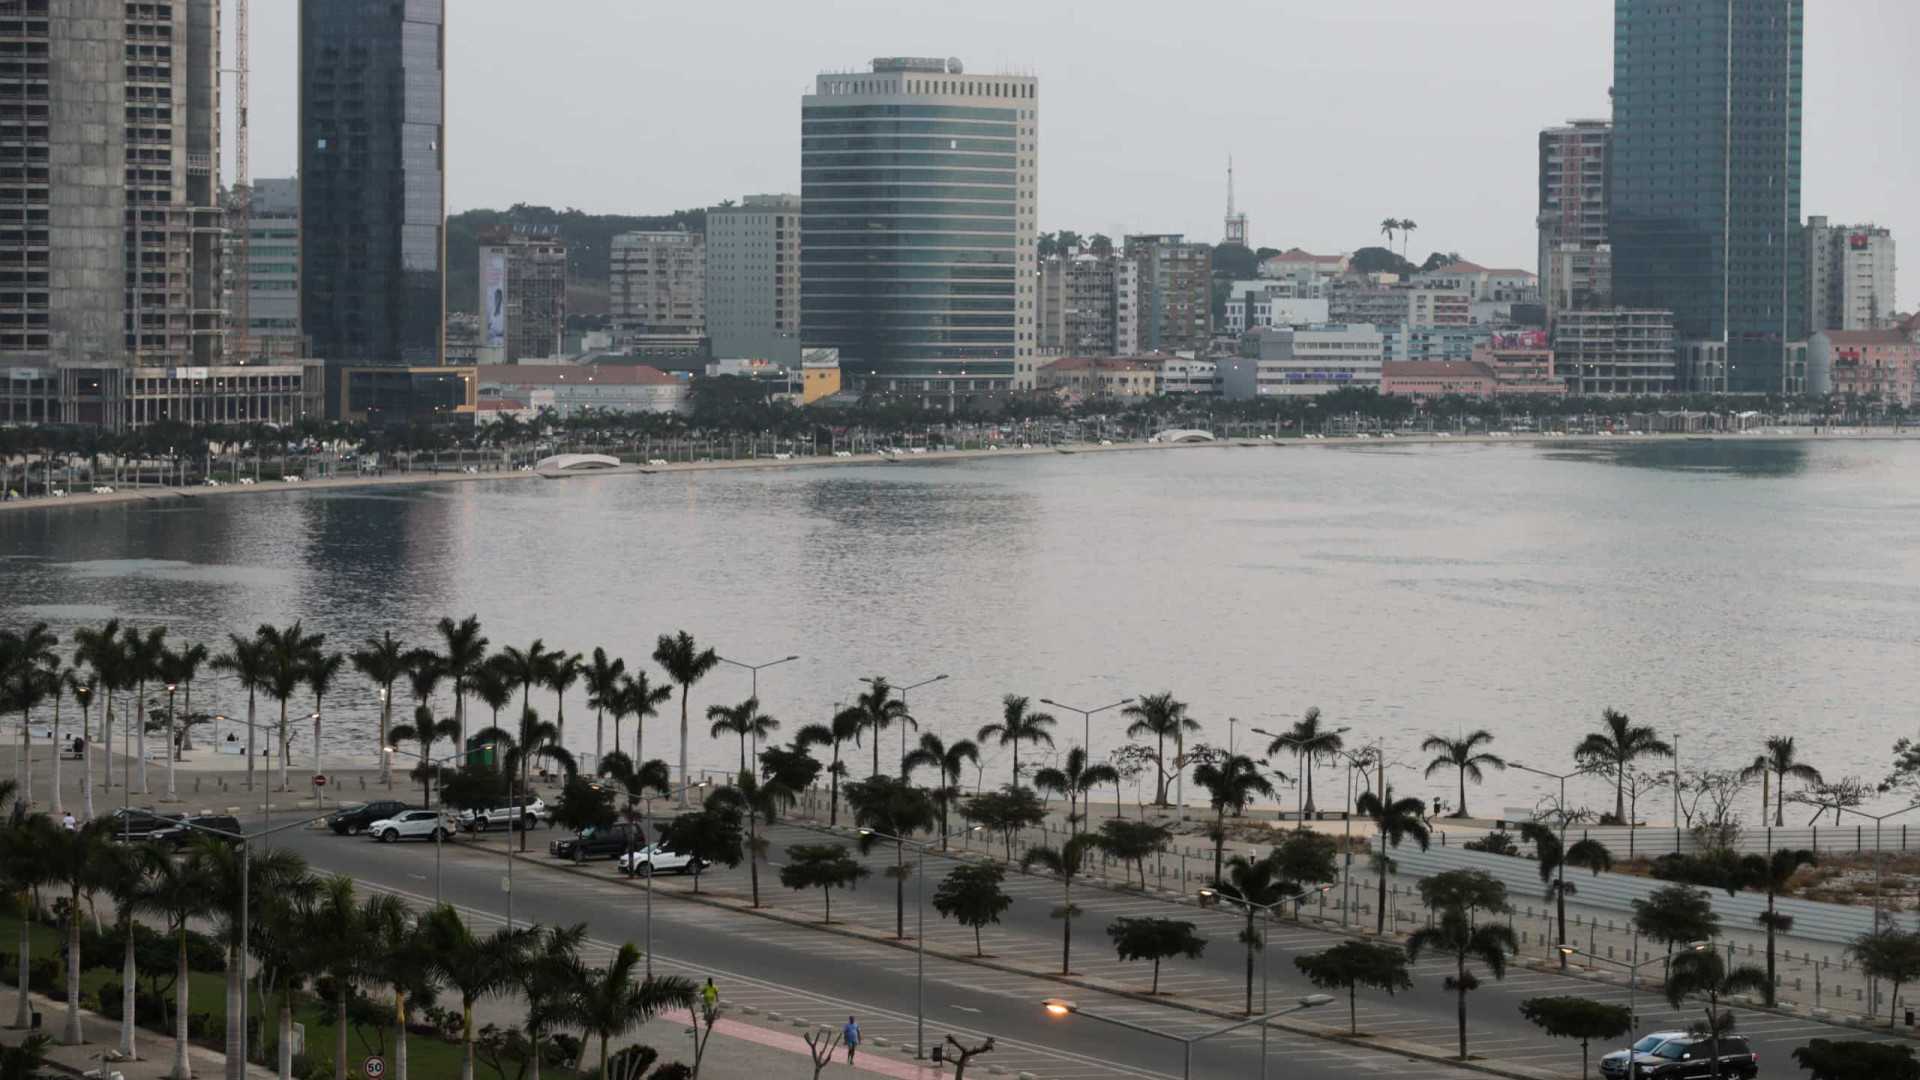 Angola recebeu mais de 500 projetos de investimento nos últimos 5 anos